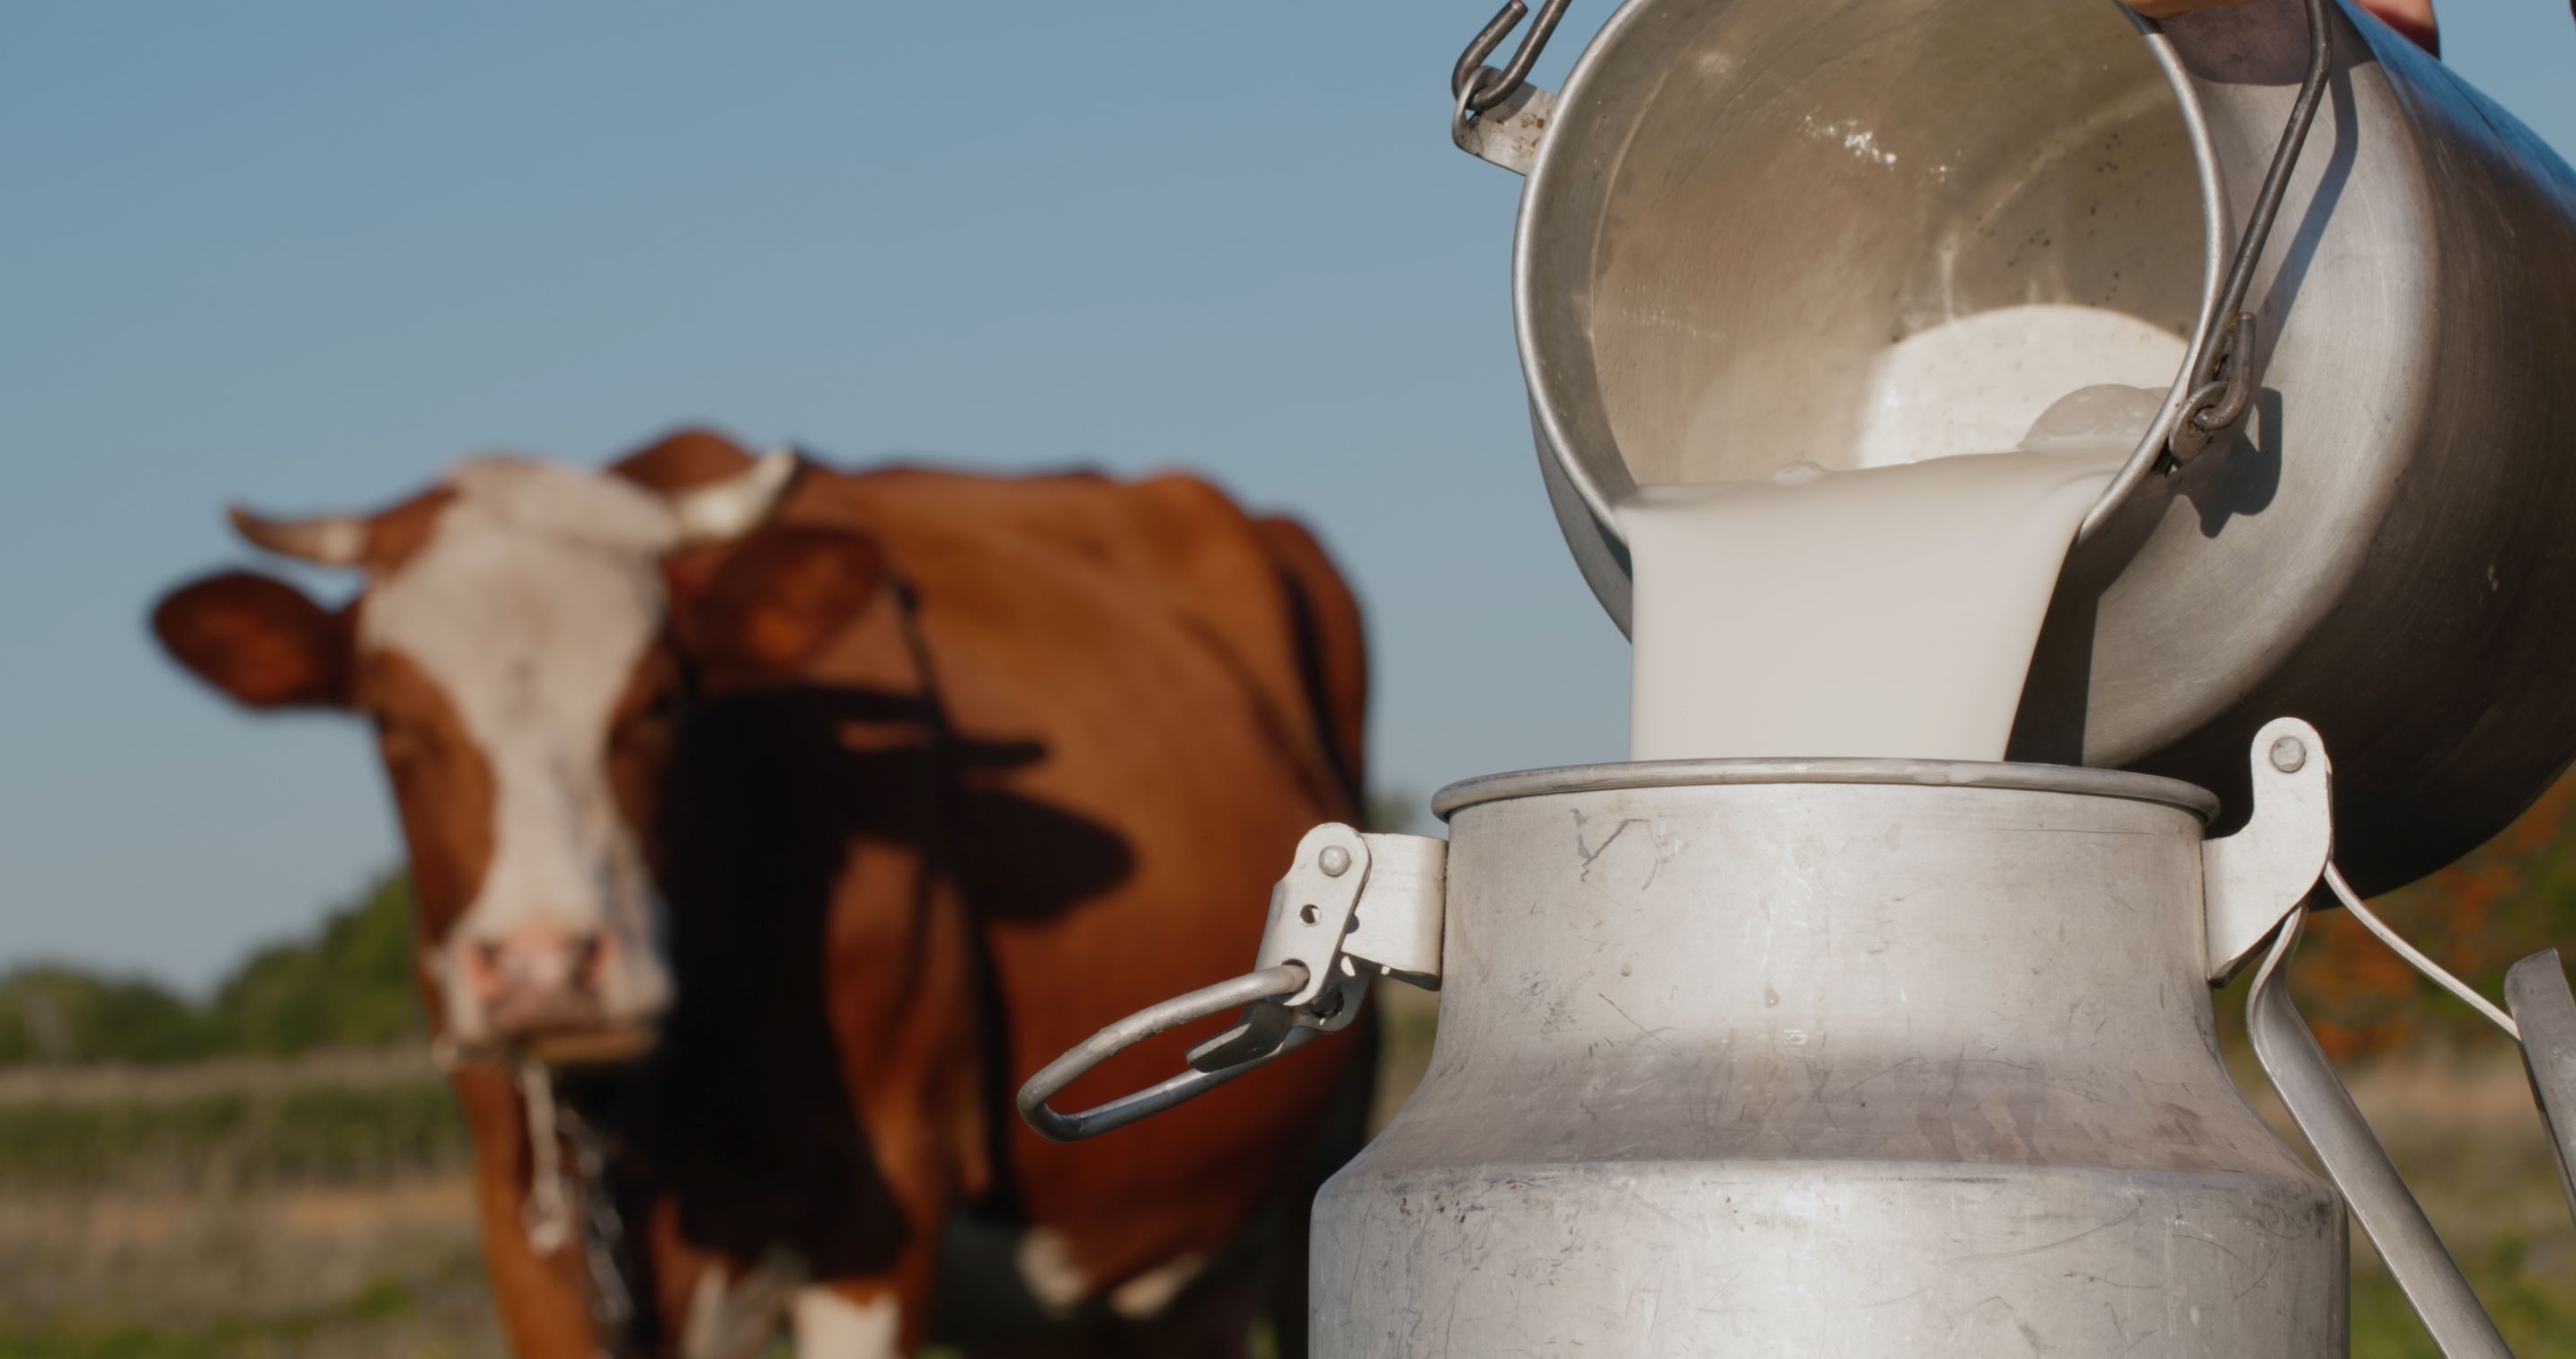 Estijoje pieno supirkimo kainos per metus krito 13,5 proc.